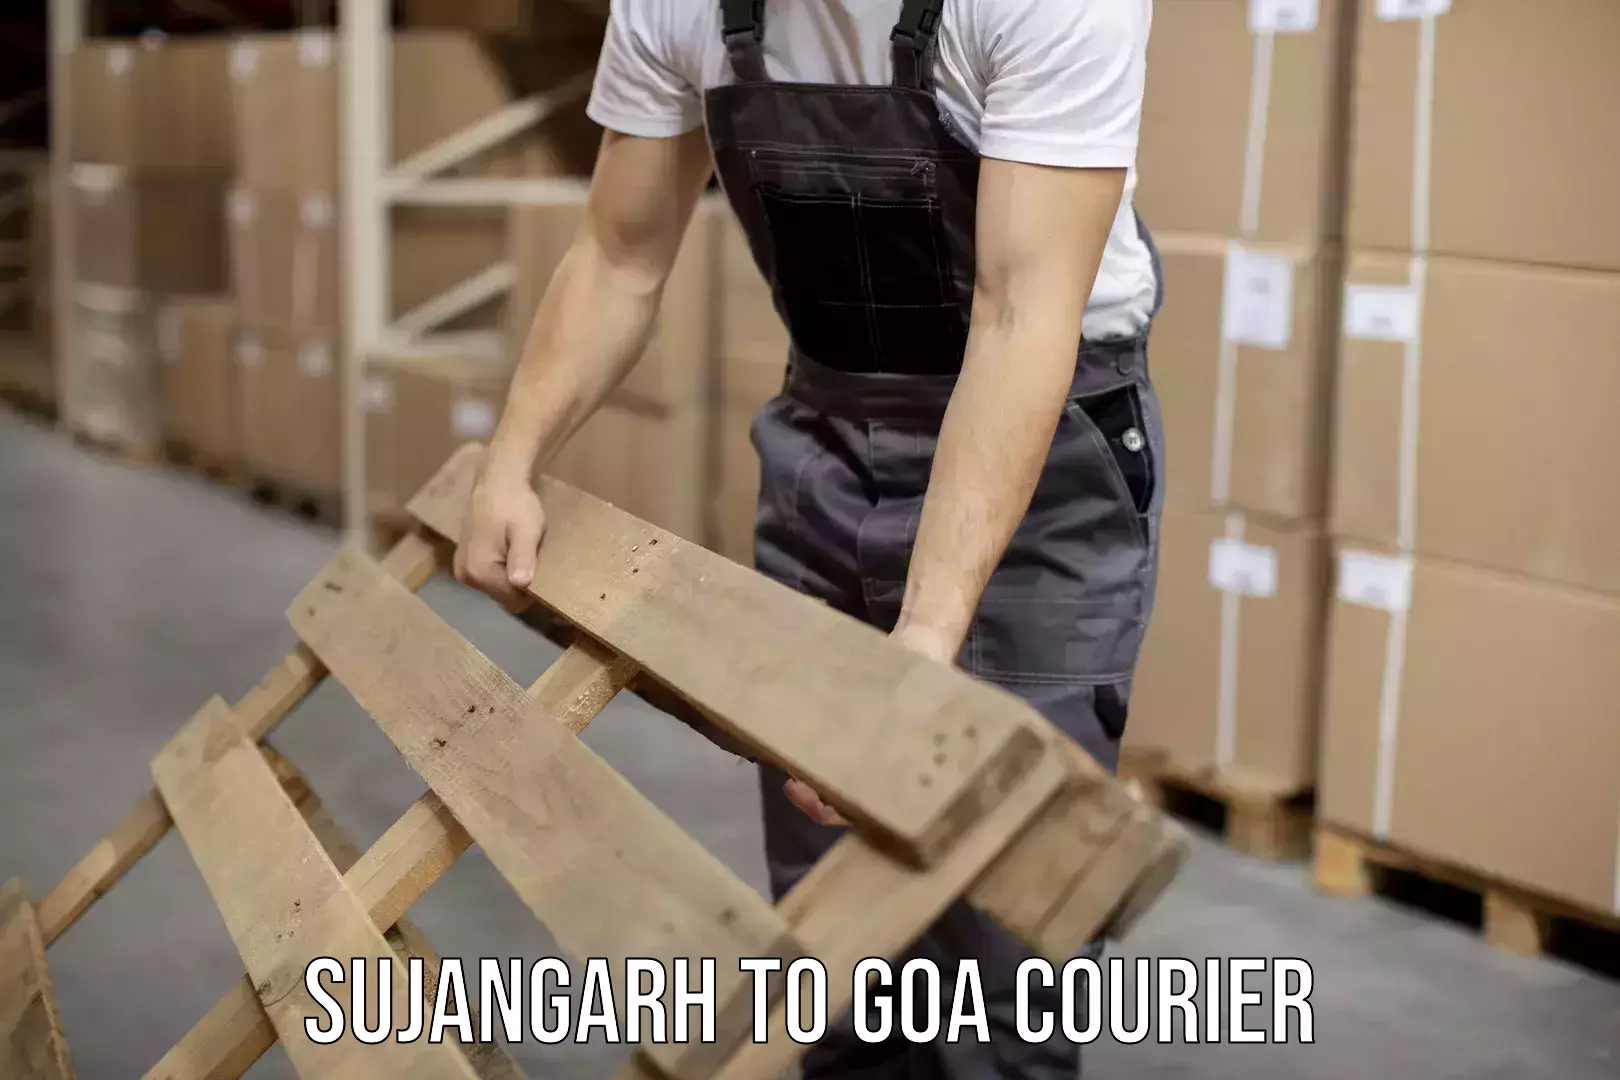 Courier service partnerships Sujangarh to Panjim